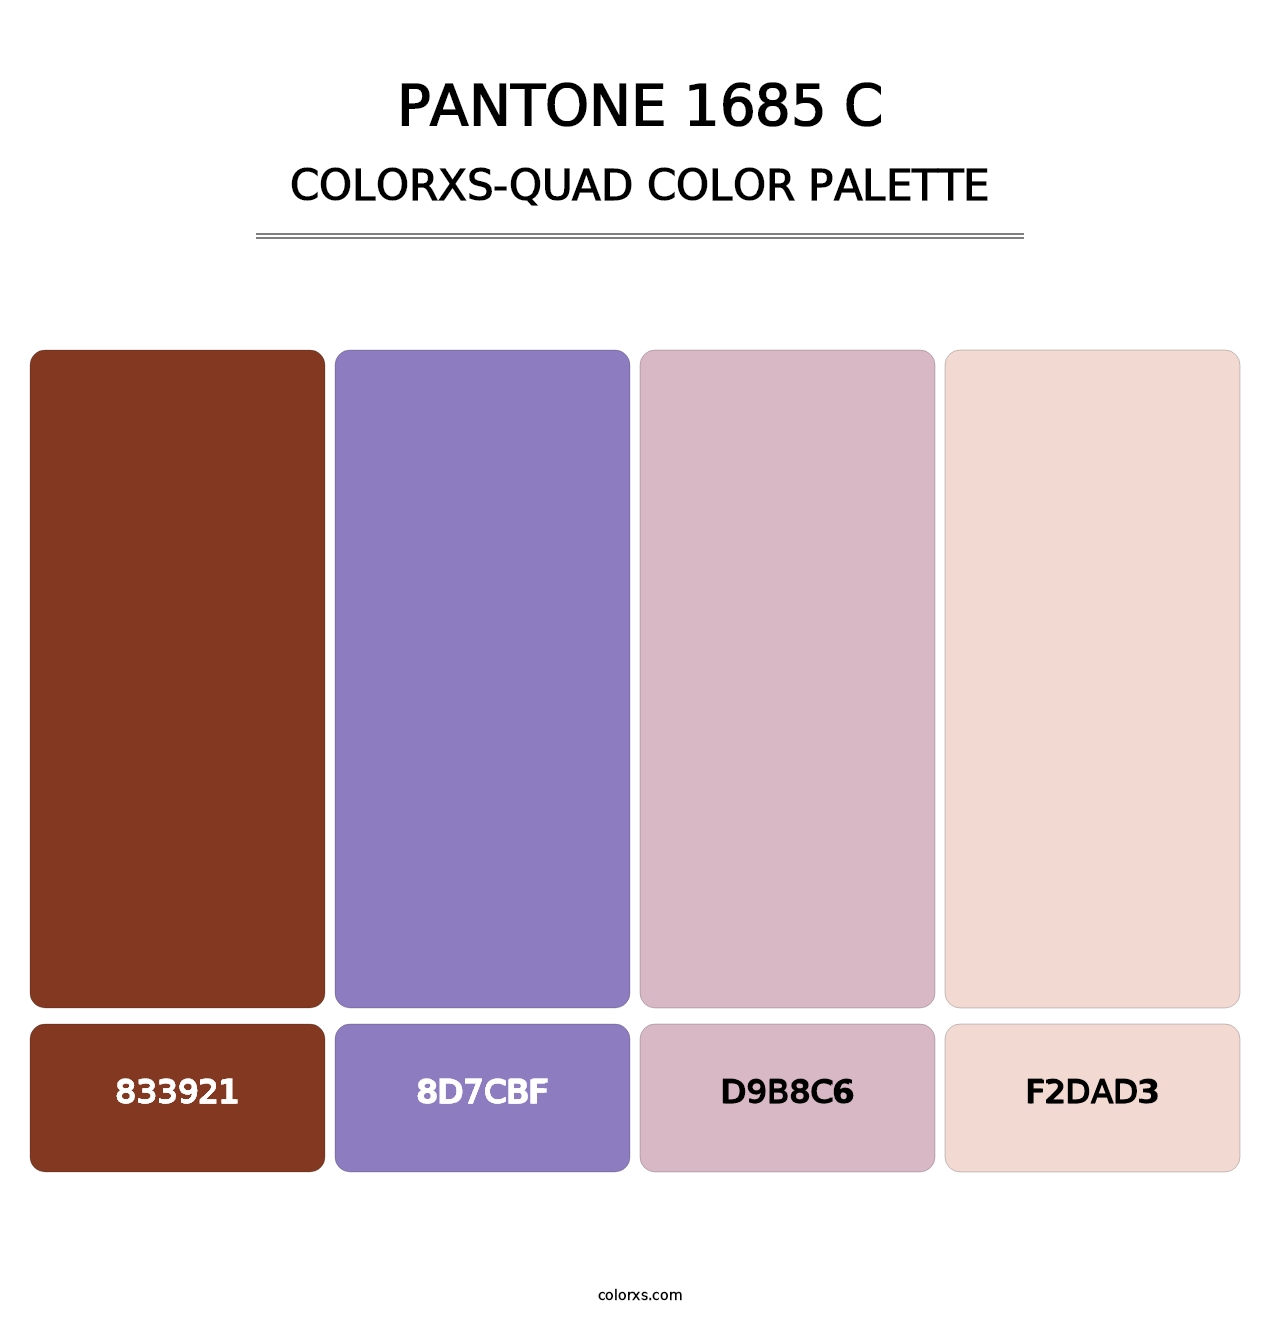 PANTONE 1685 C - Colorxs Quad Palette